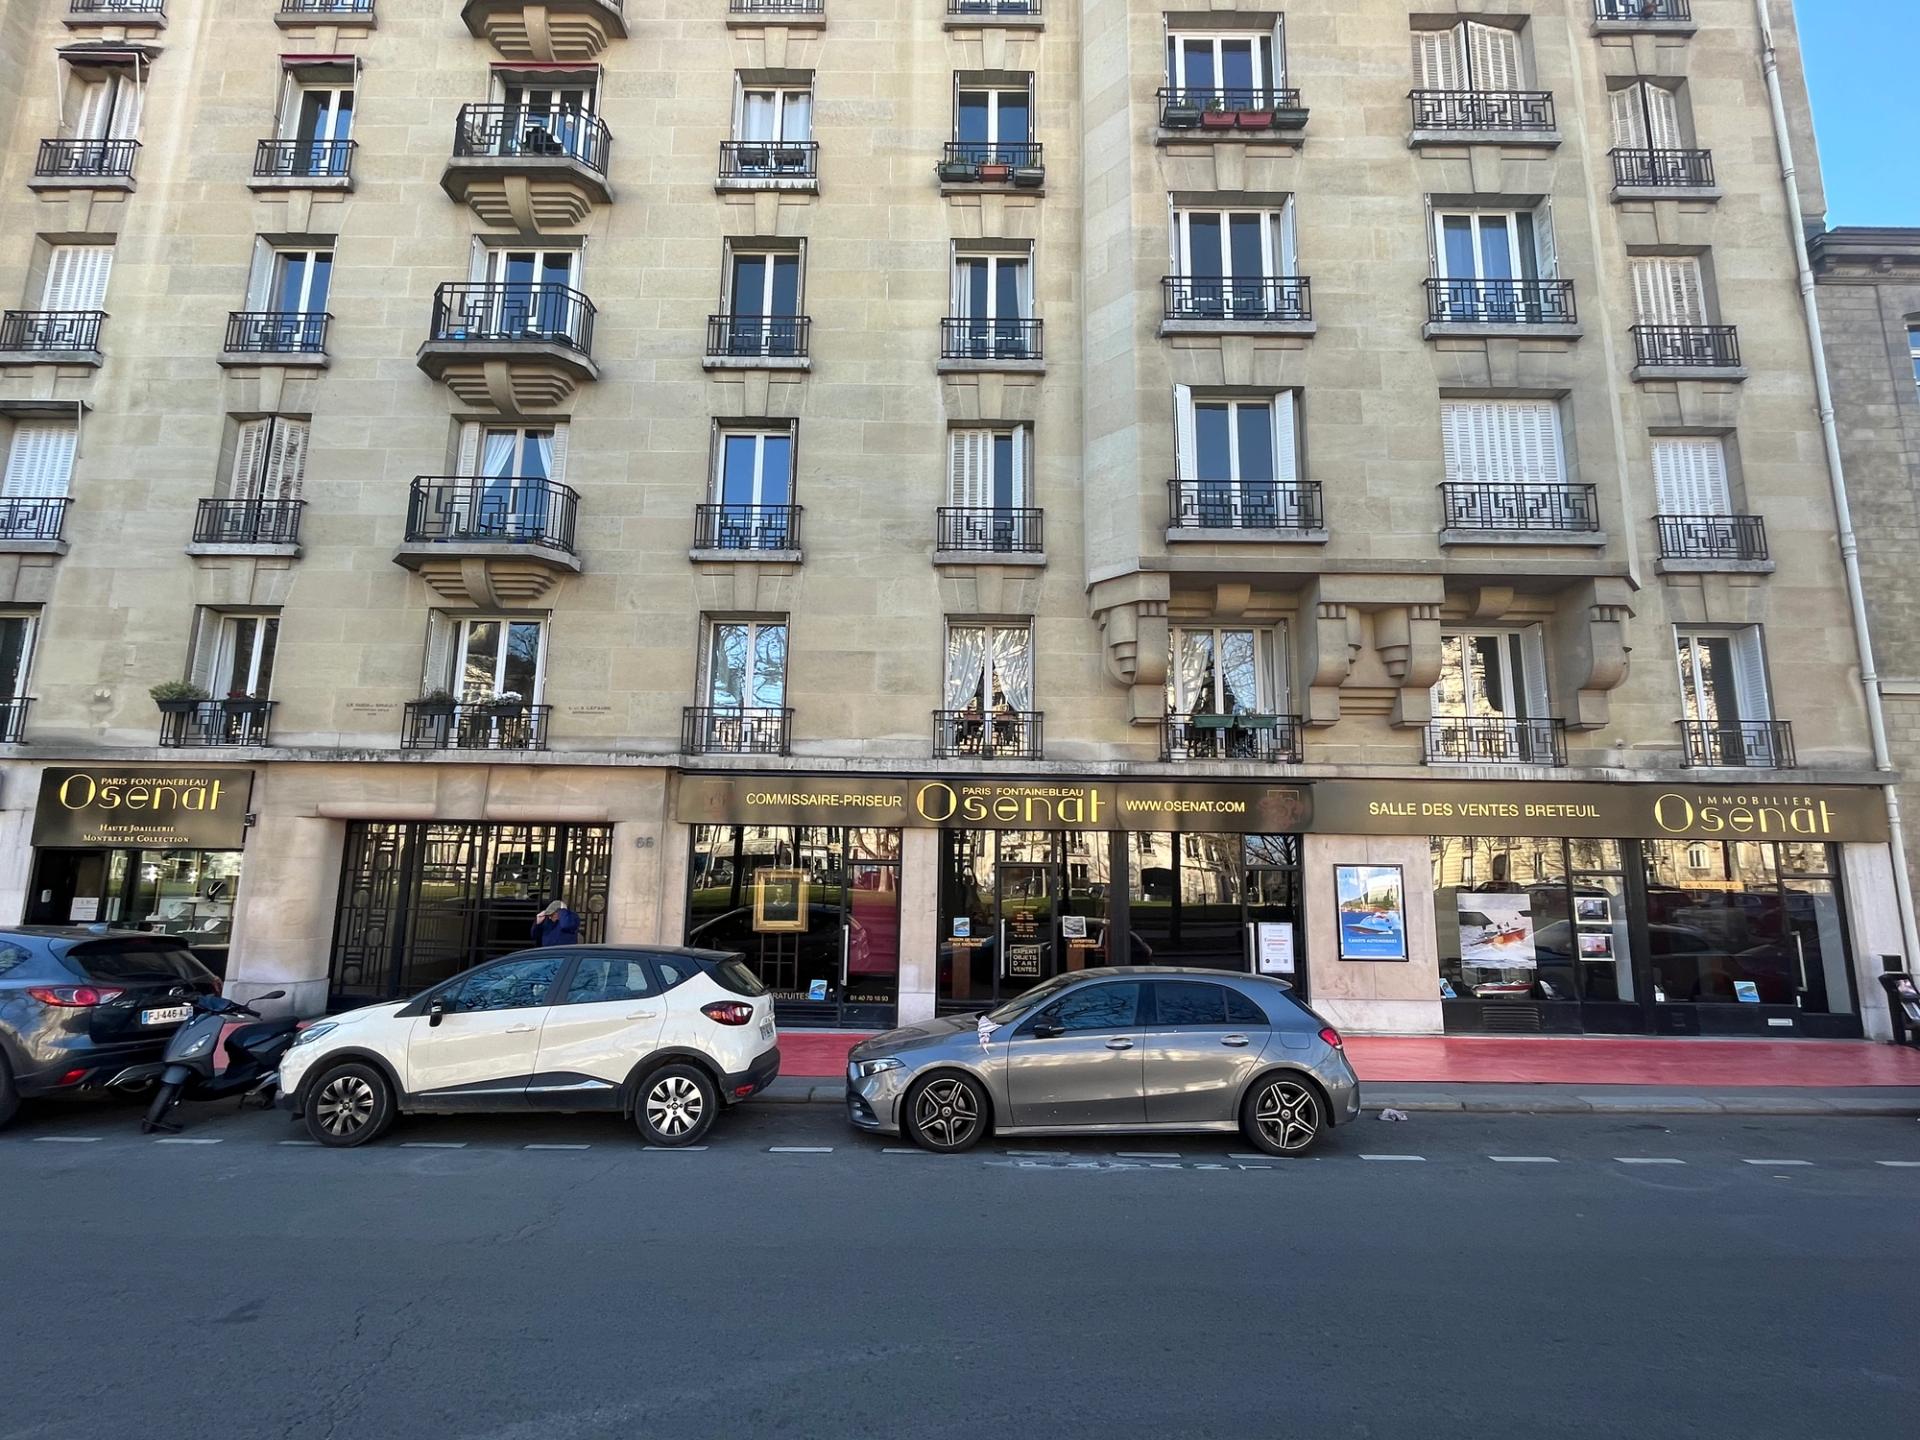 La nouvelle salle des ventes parisienne de la maison Osenat, avenue de Breteuil. Photo : Osenat